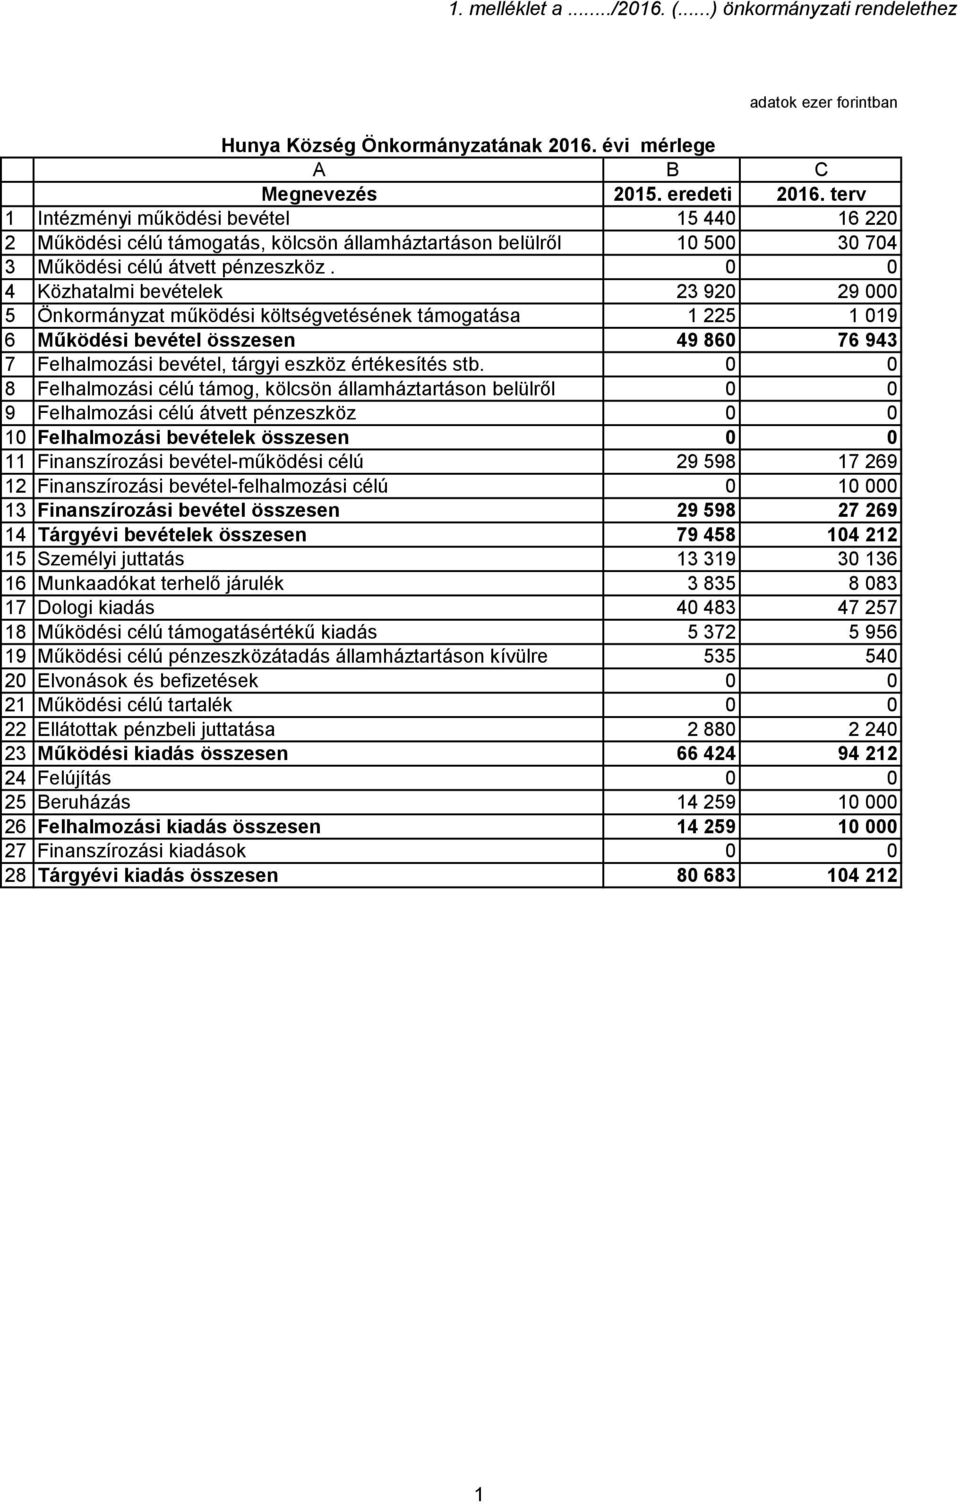 0 0 4 Közhatalmi bevételek 23 920 29 000 5 Önkormányzat működési költségvetésének támogatása 1 225 1 019 6 Működési bevétel összesen 49 860 76 943 7 Felhalmozási bevétel, tárgyi eszköz értékesítés